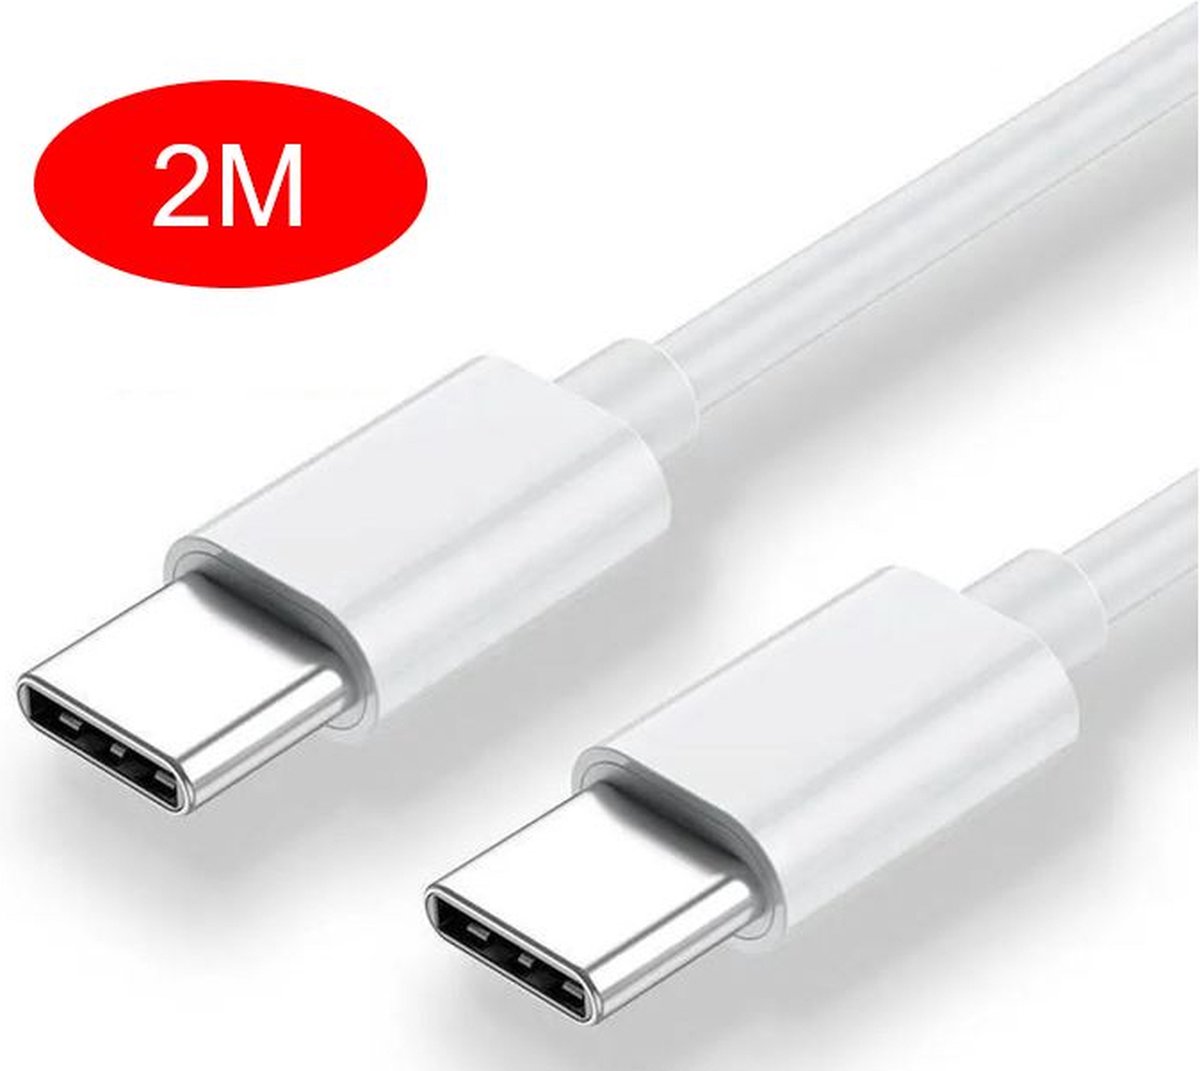 USB C kabel 2 Meter 85W 4A - USB C naar USB C - Geschikt voor Macbook, iPad, Iphone, Samsung Galaxy/Note - Extra stevig